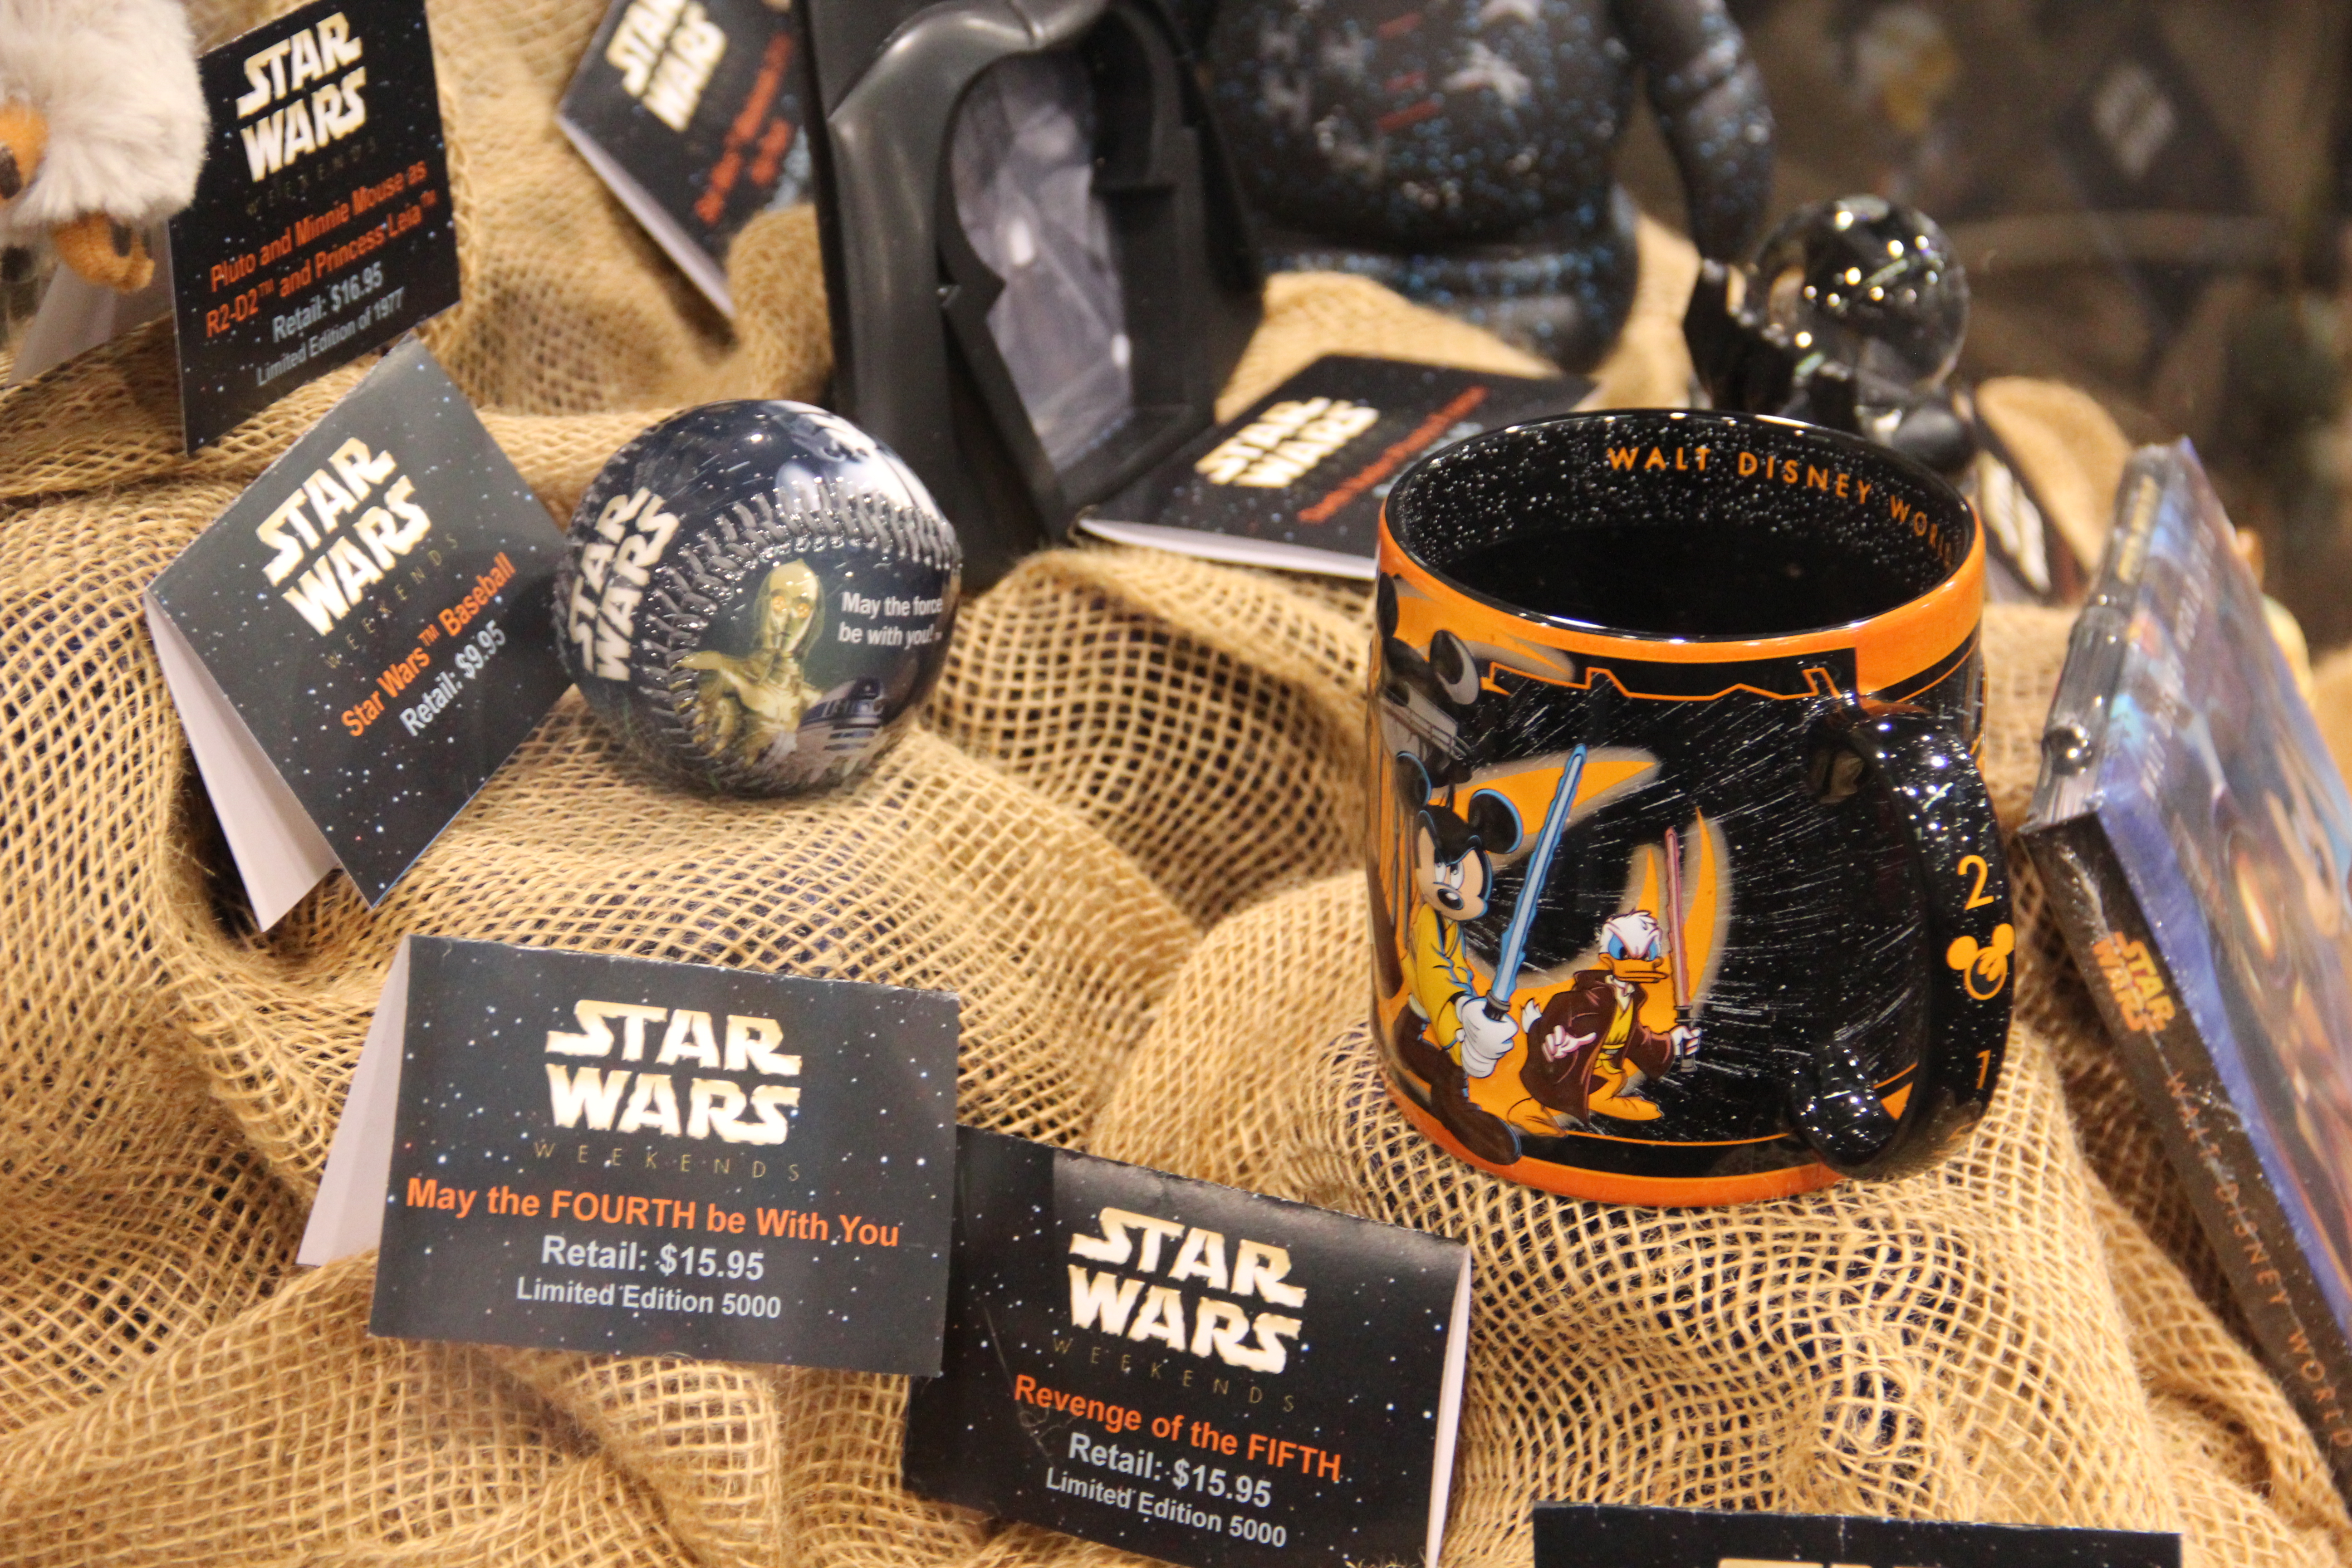 Disney Coffee Cup - Star Wars Weekends 2015 Logo